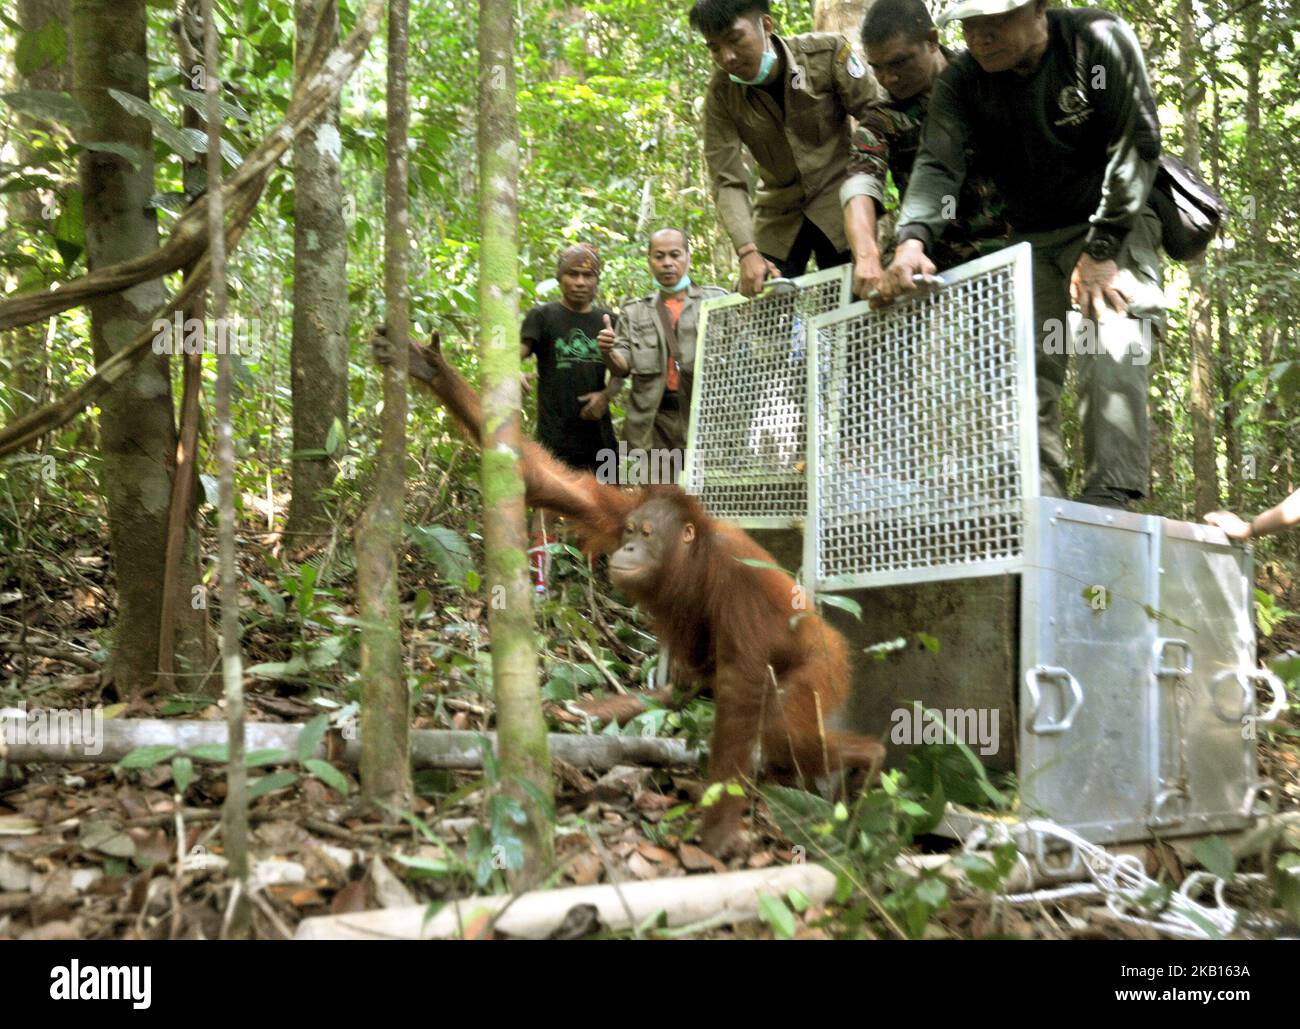 KALIMANTAN OCCIDENTALE, INDONESIA, SETTEMBRE - 17 : gli Orangutani escono sugli alberi e salgono fino in cima al rilascio di Orangutan nella foresta di Bukit Baka Bukit Raya Parco Nazionale, nel Kalimantan Occidentale, il 14 Settembre 2018. IAR (International Animal Rescue) insieme con BKSDA (Agenzia indonesiana per la conservazione della natura) Sezione di conservazione di Ketapang 1 Area e Bukit Baka Bukit Raya National Park release 4 conservazione Orangutani su diversi percorsi. I quattro orangutani liberati sono stati vittime del commercio illegale di nome Ongki e illegalmente gestiti da residenti di nome Rambo, Kepo, Ami, il loro orangu adolescente Foto Stock